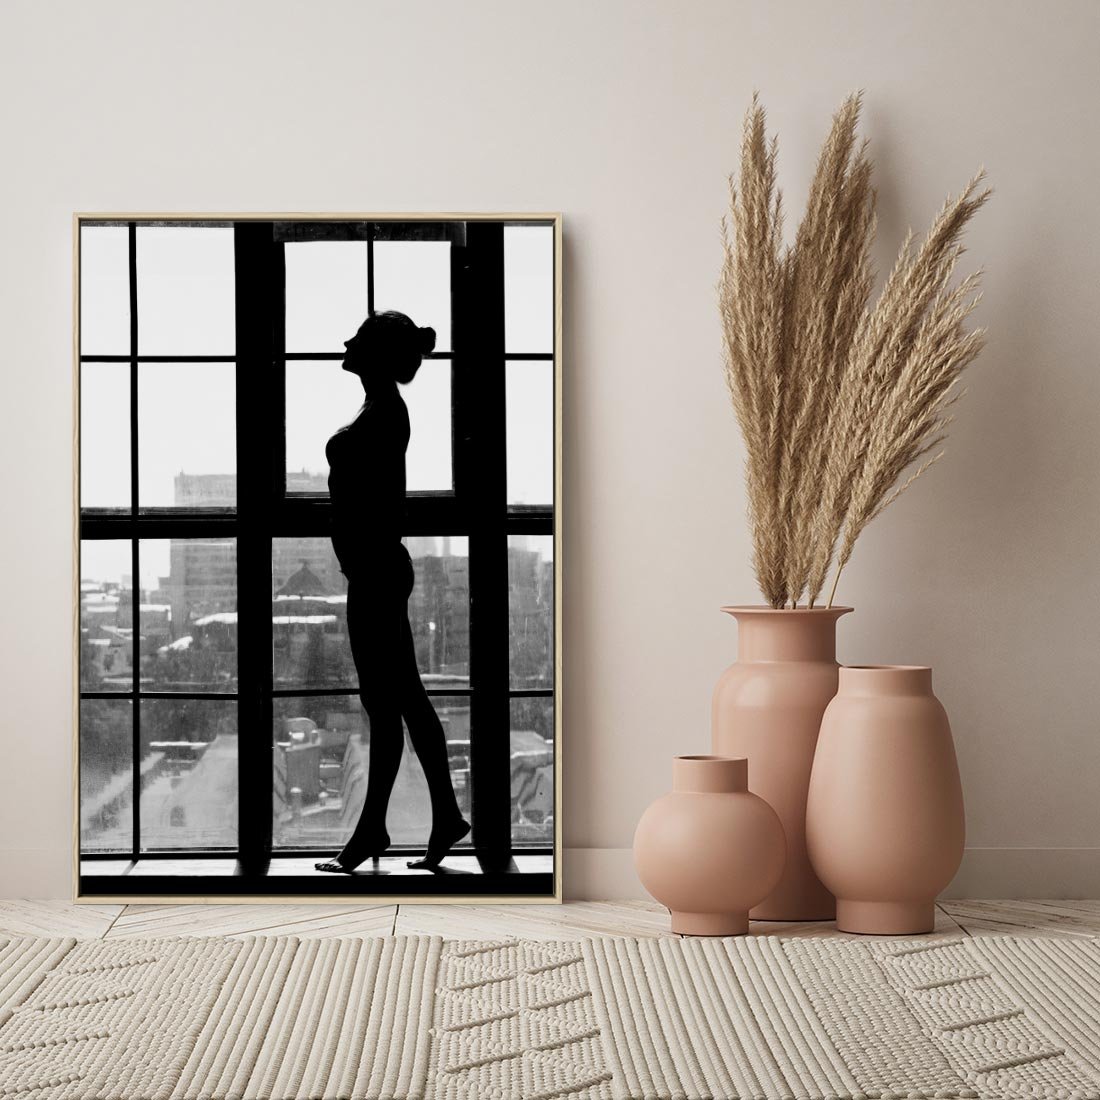 Obraz w ramie 50x70 - Piękno Kobiecej Formy - retro zdjęcie, czarno białe - rama drewno